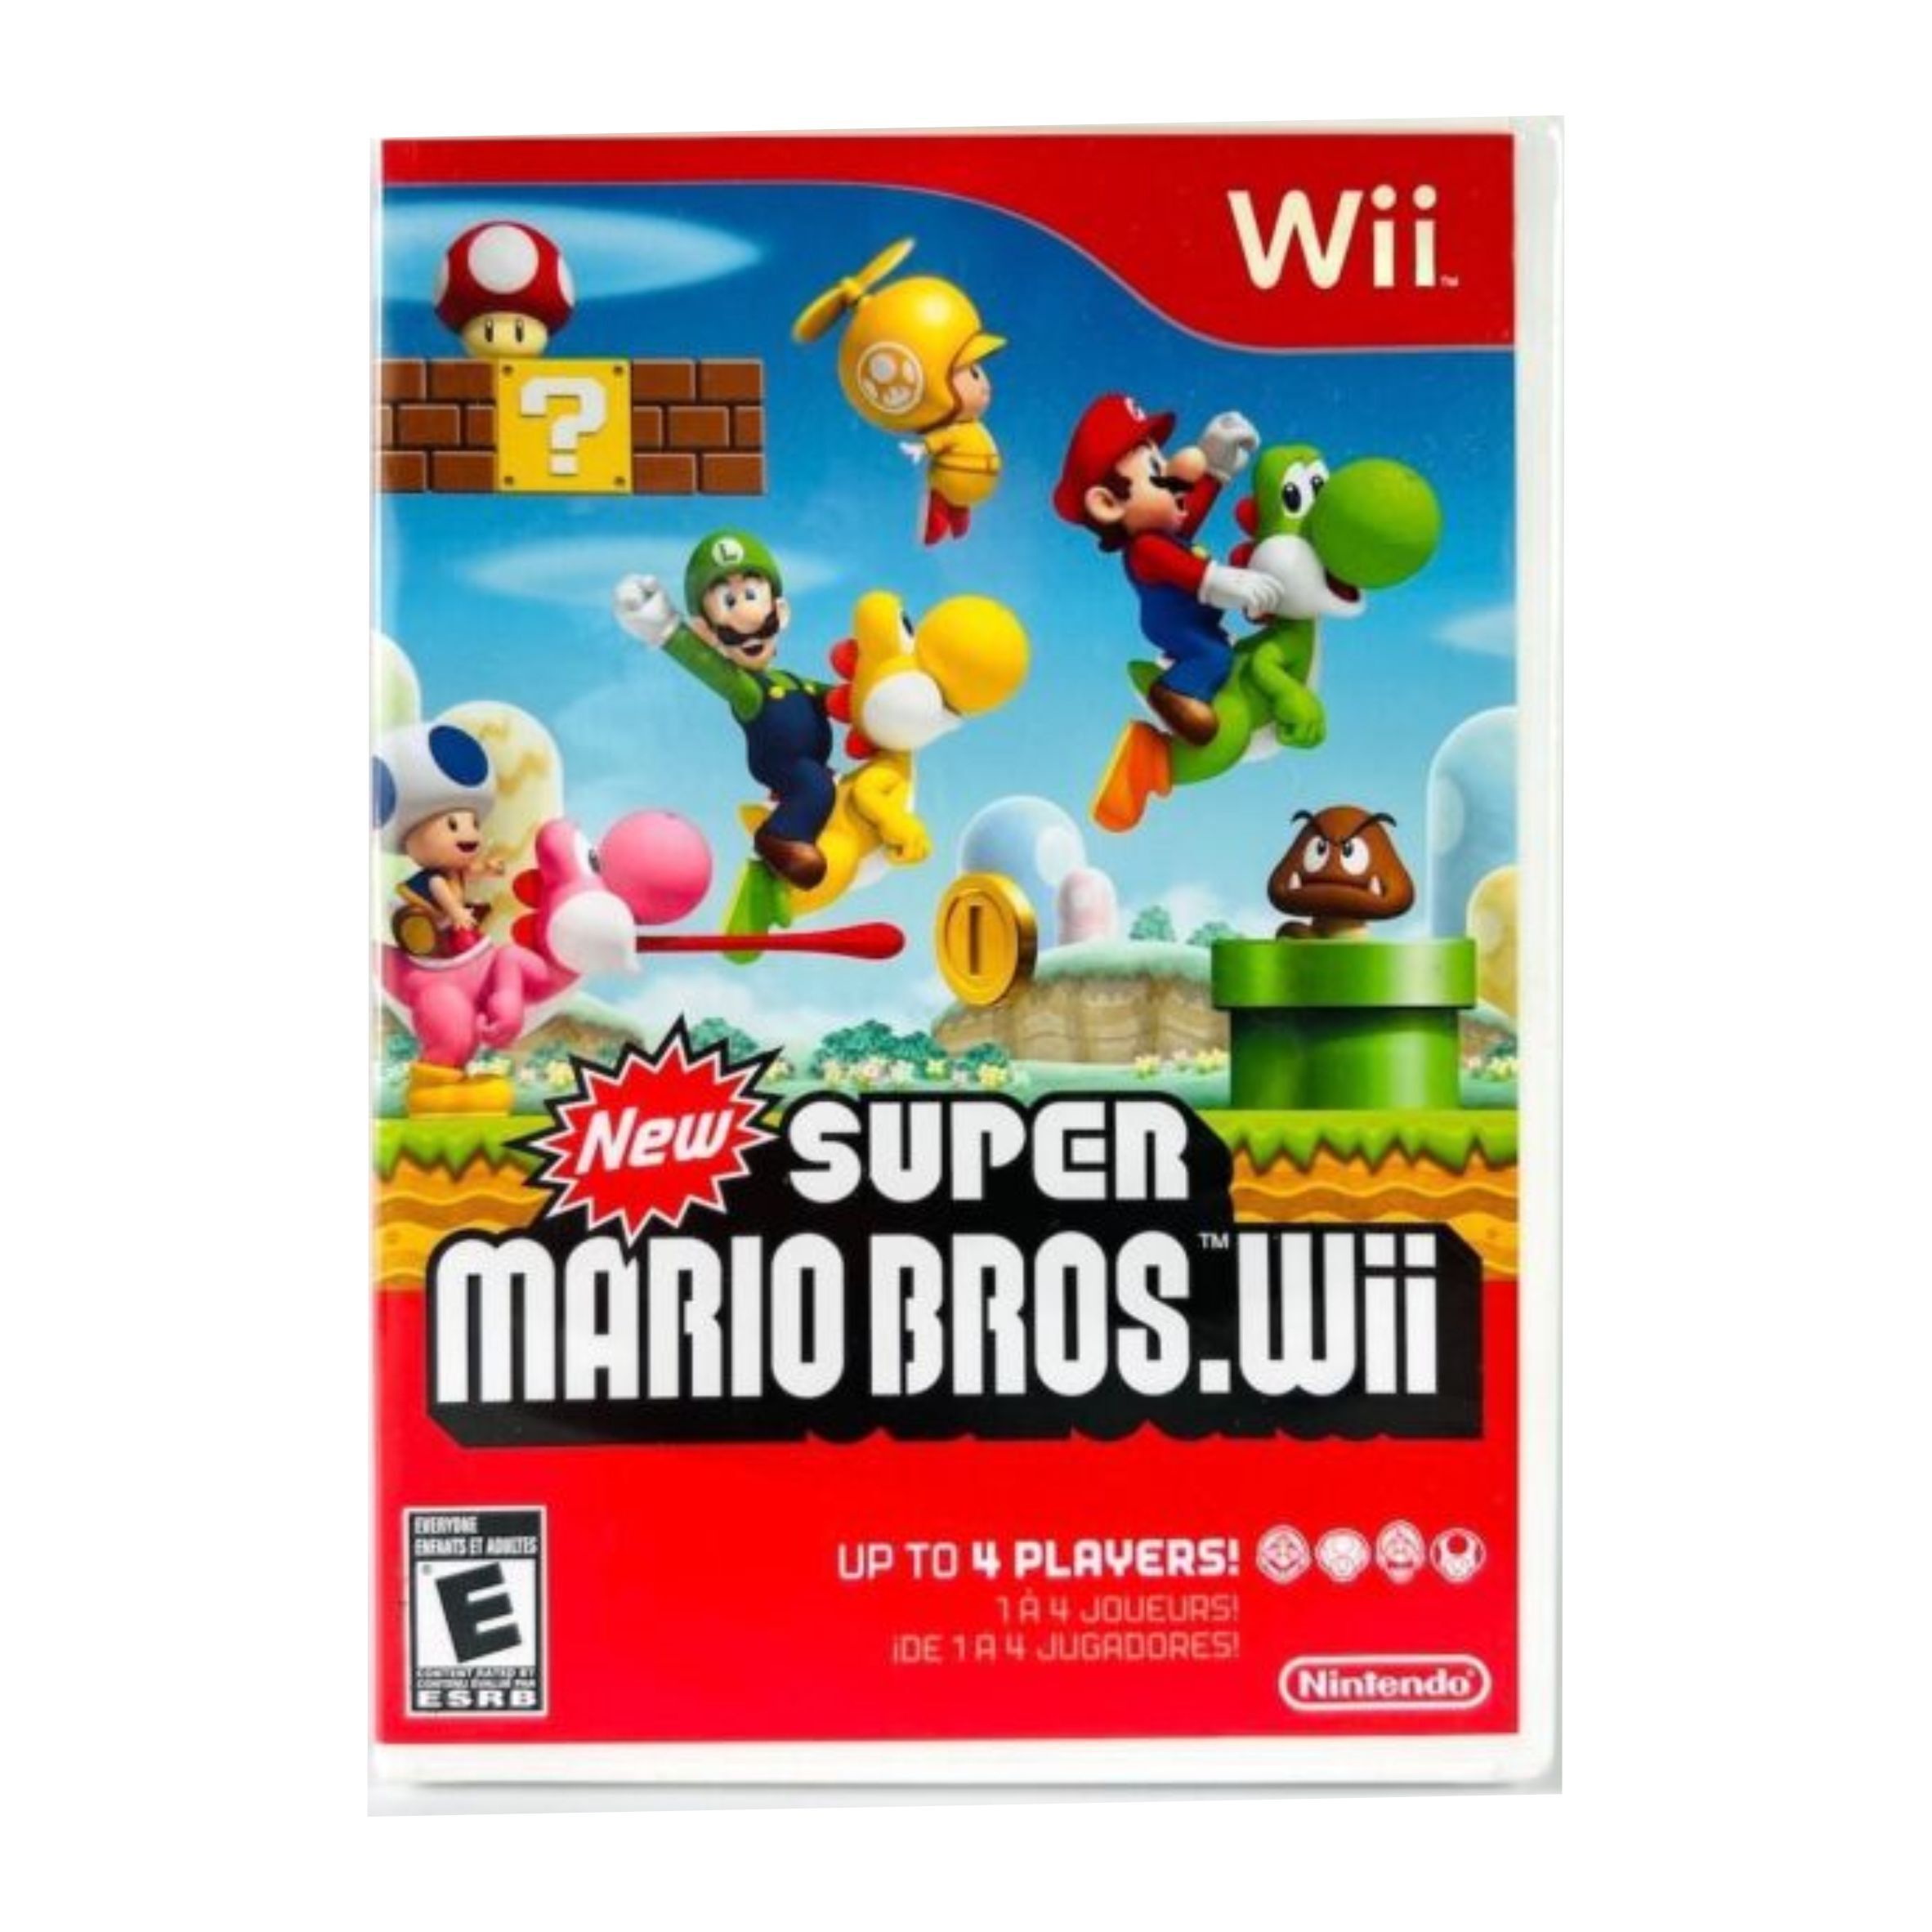 Por que meu filho ama o jogo 'Super Mario Bros'?